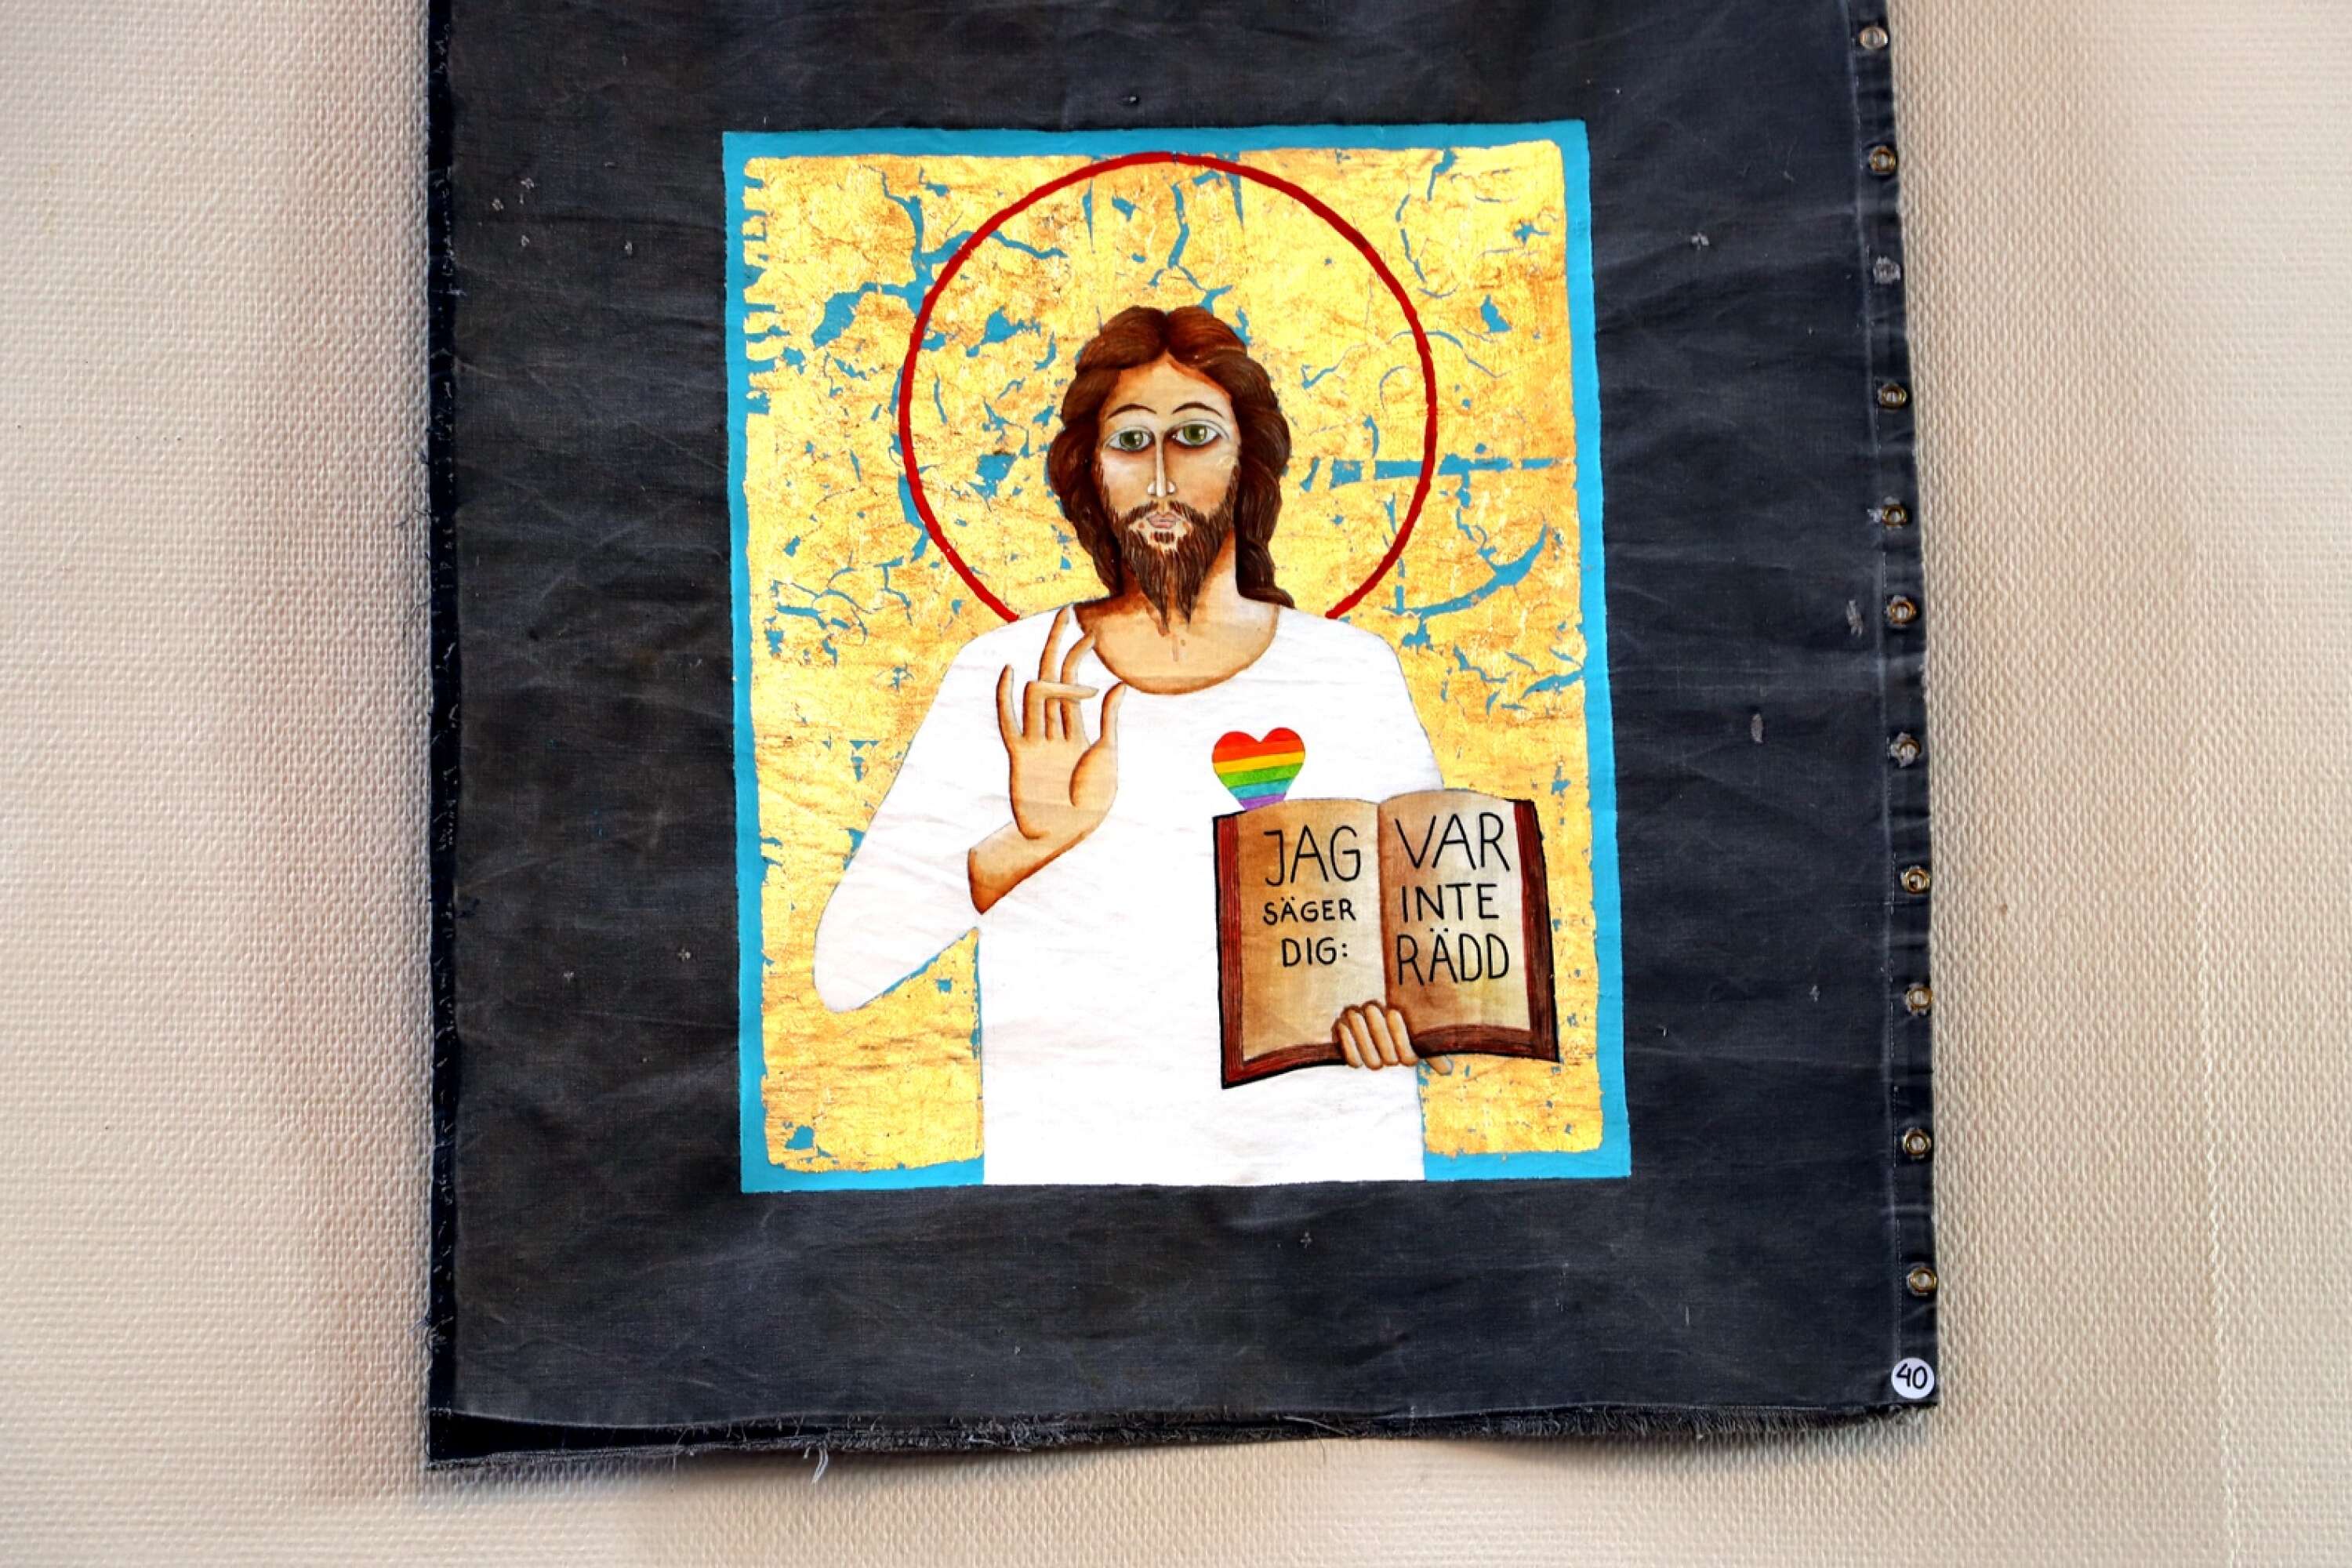 Mats Hermansson är präst och konstnär och målar presennings-ikoner. Just nu kan hans bilder av bland annat en Pride-hjärtad Jesus ses i Skårekyrkan.